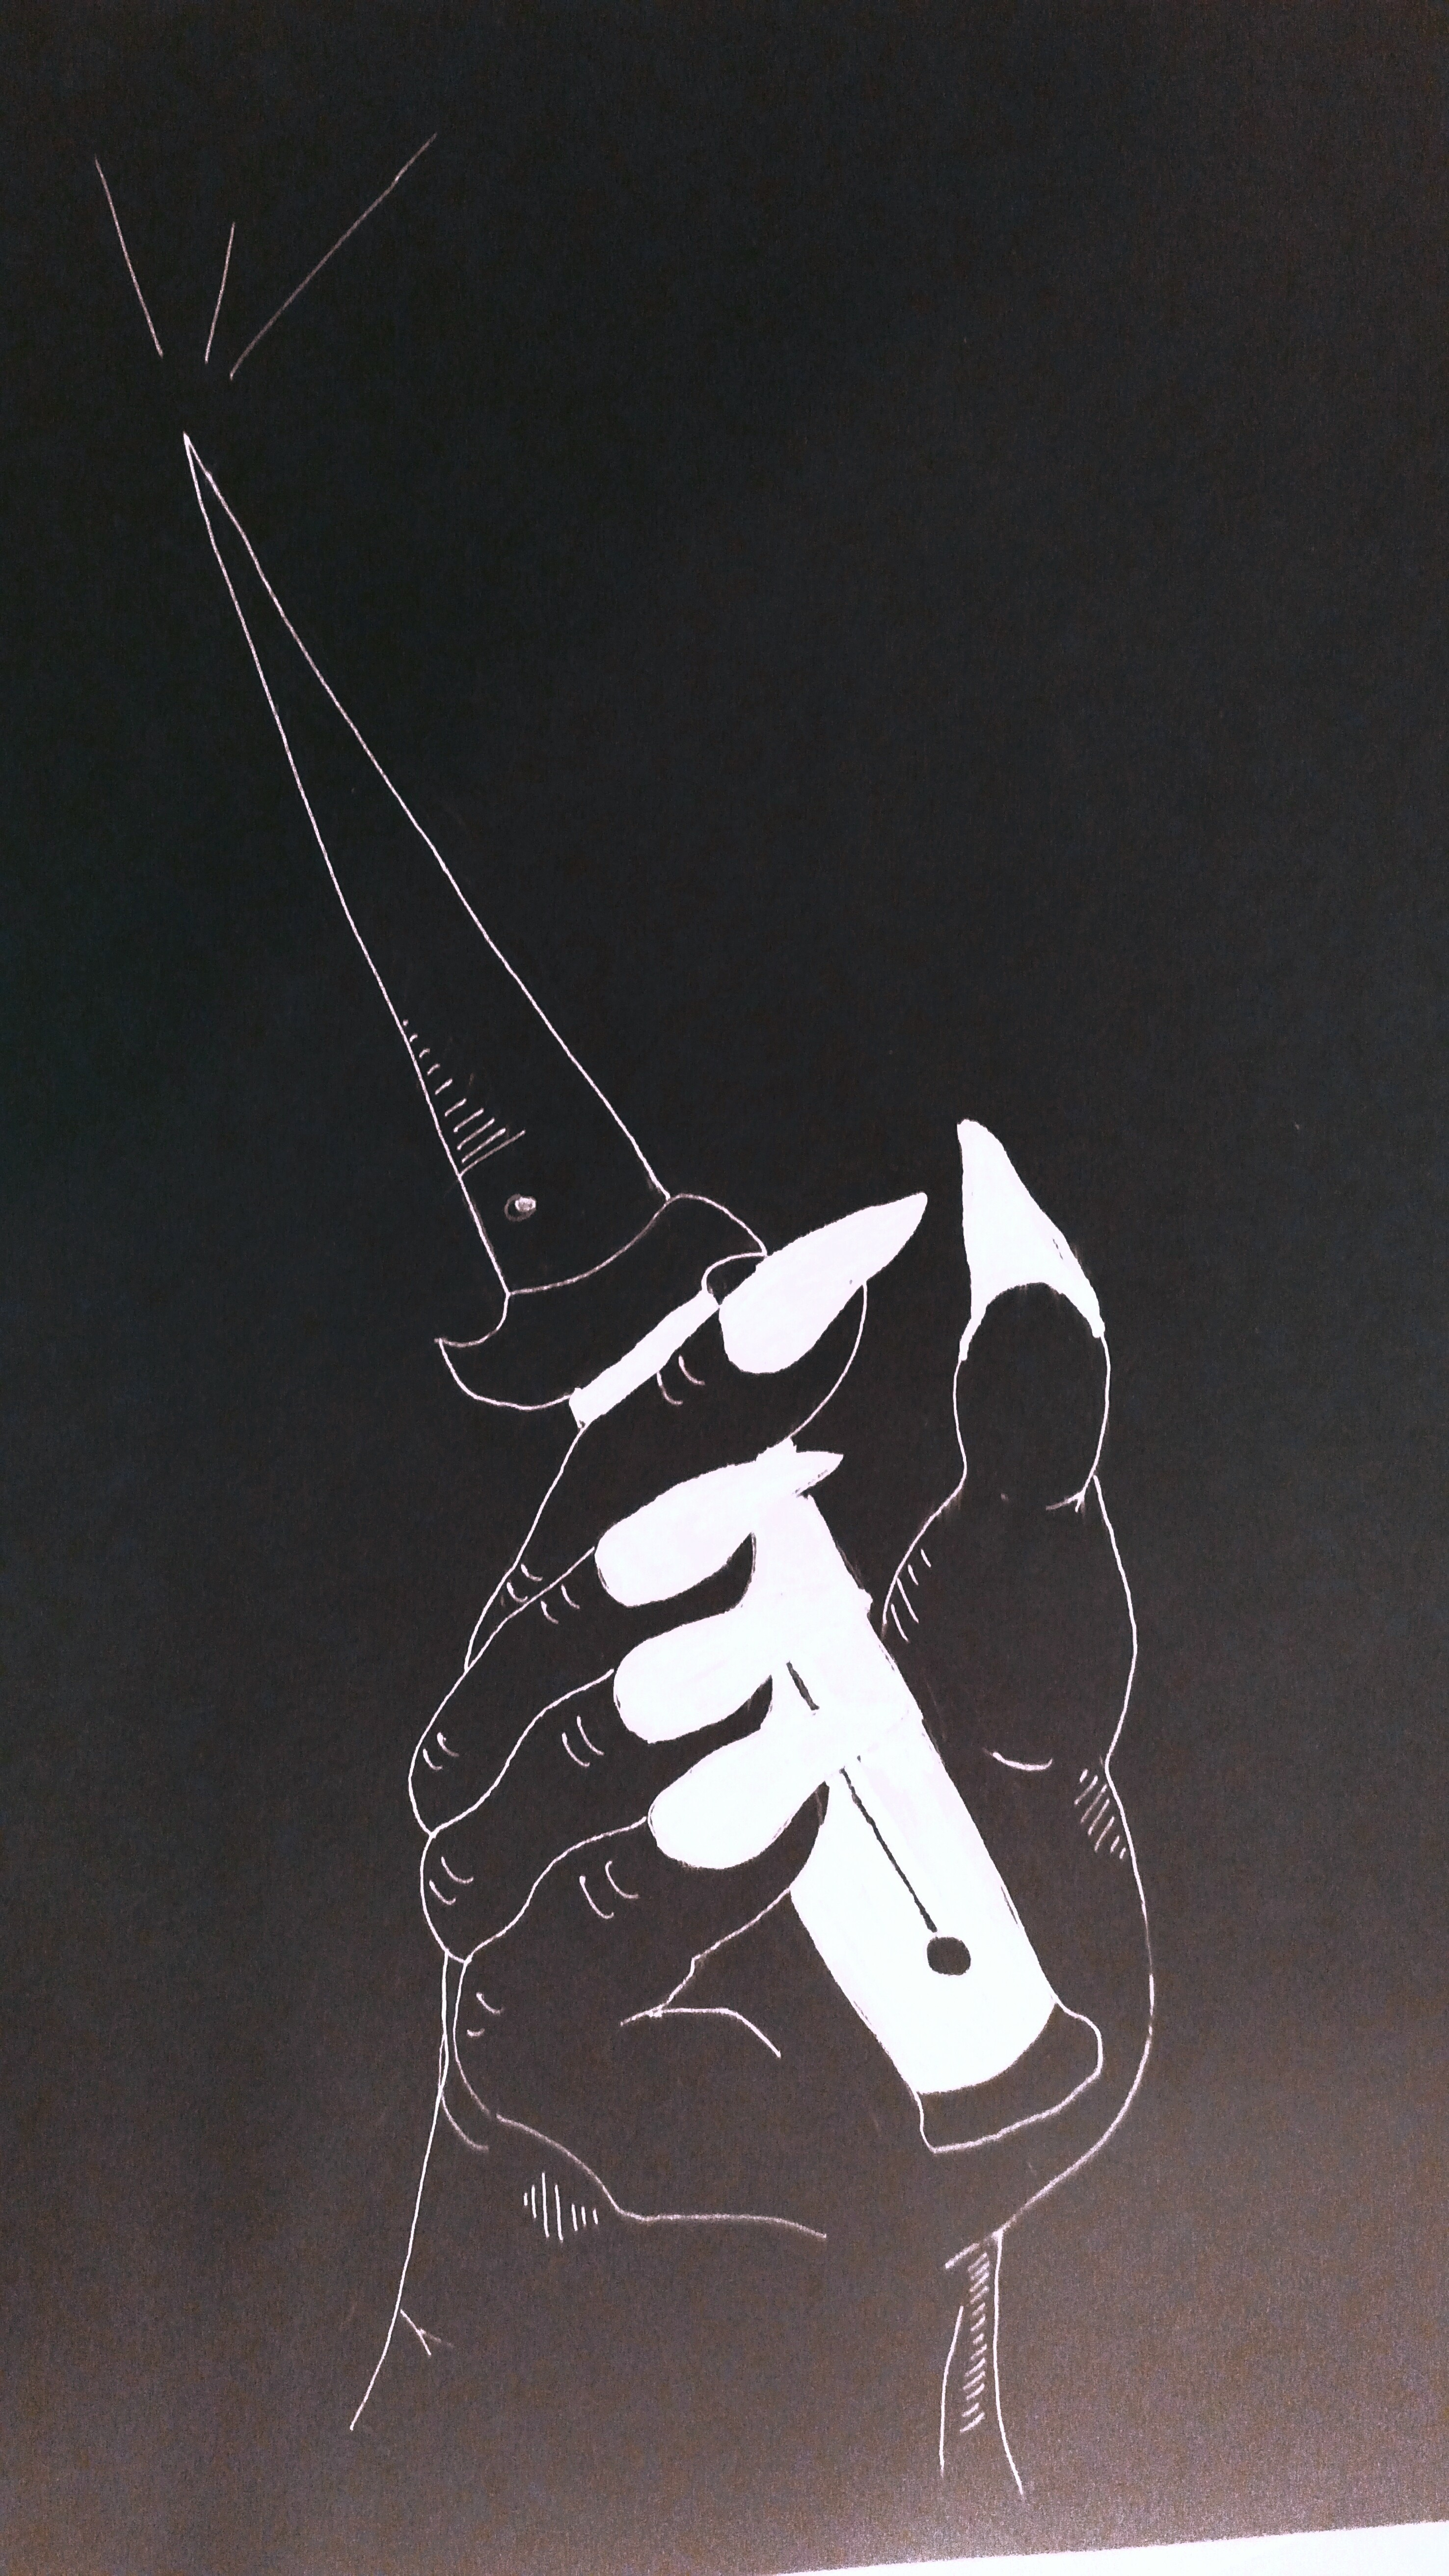 krier-knife